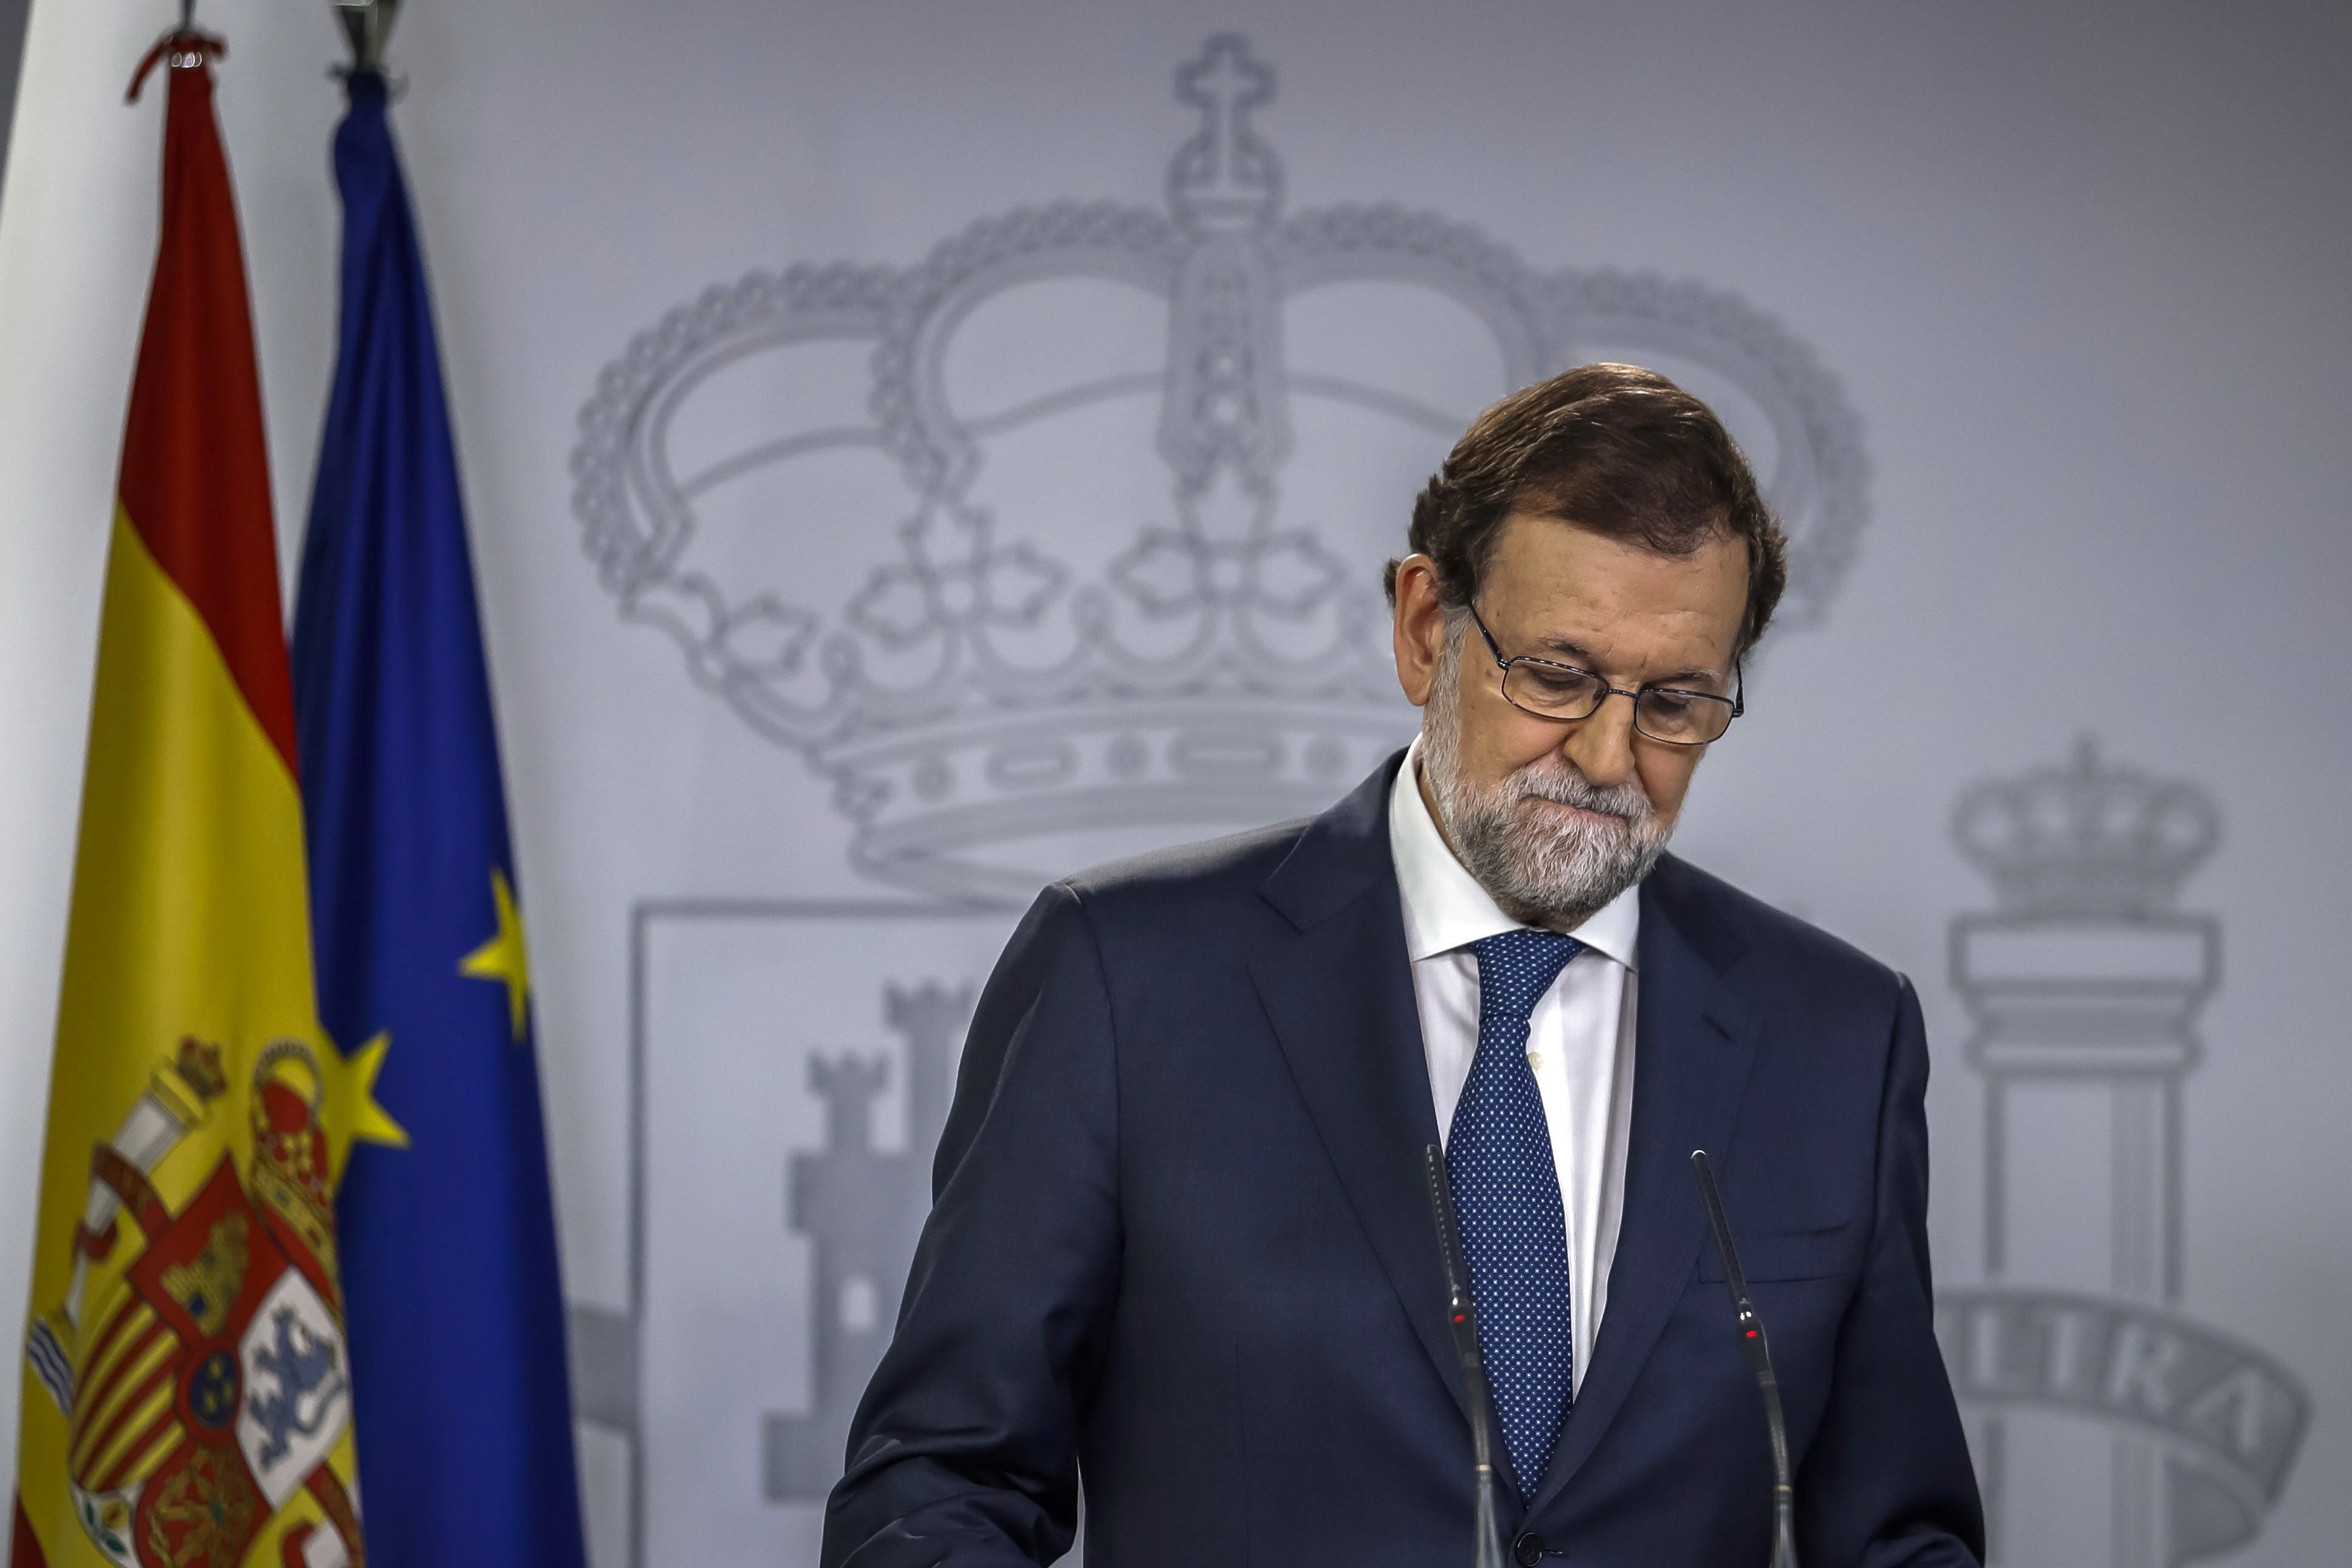 Rajoy s'enfonsa després de l'1-O, segons una enquesta